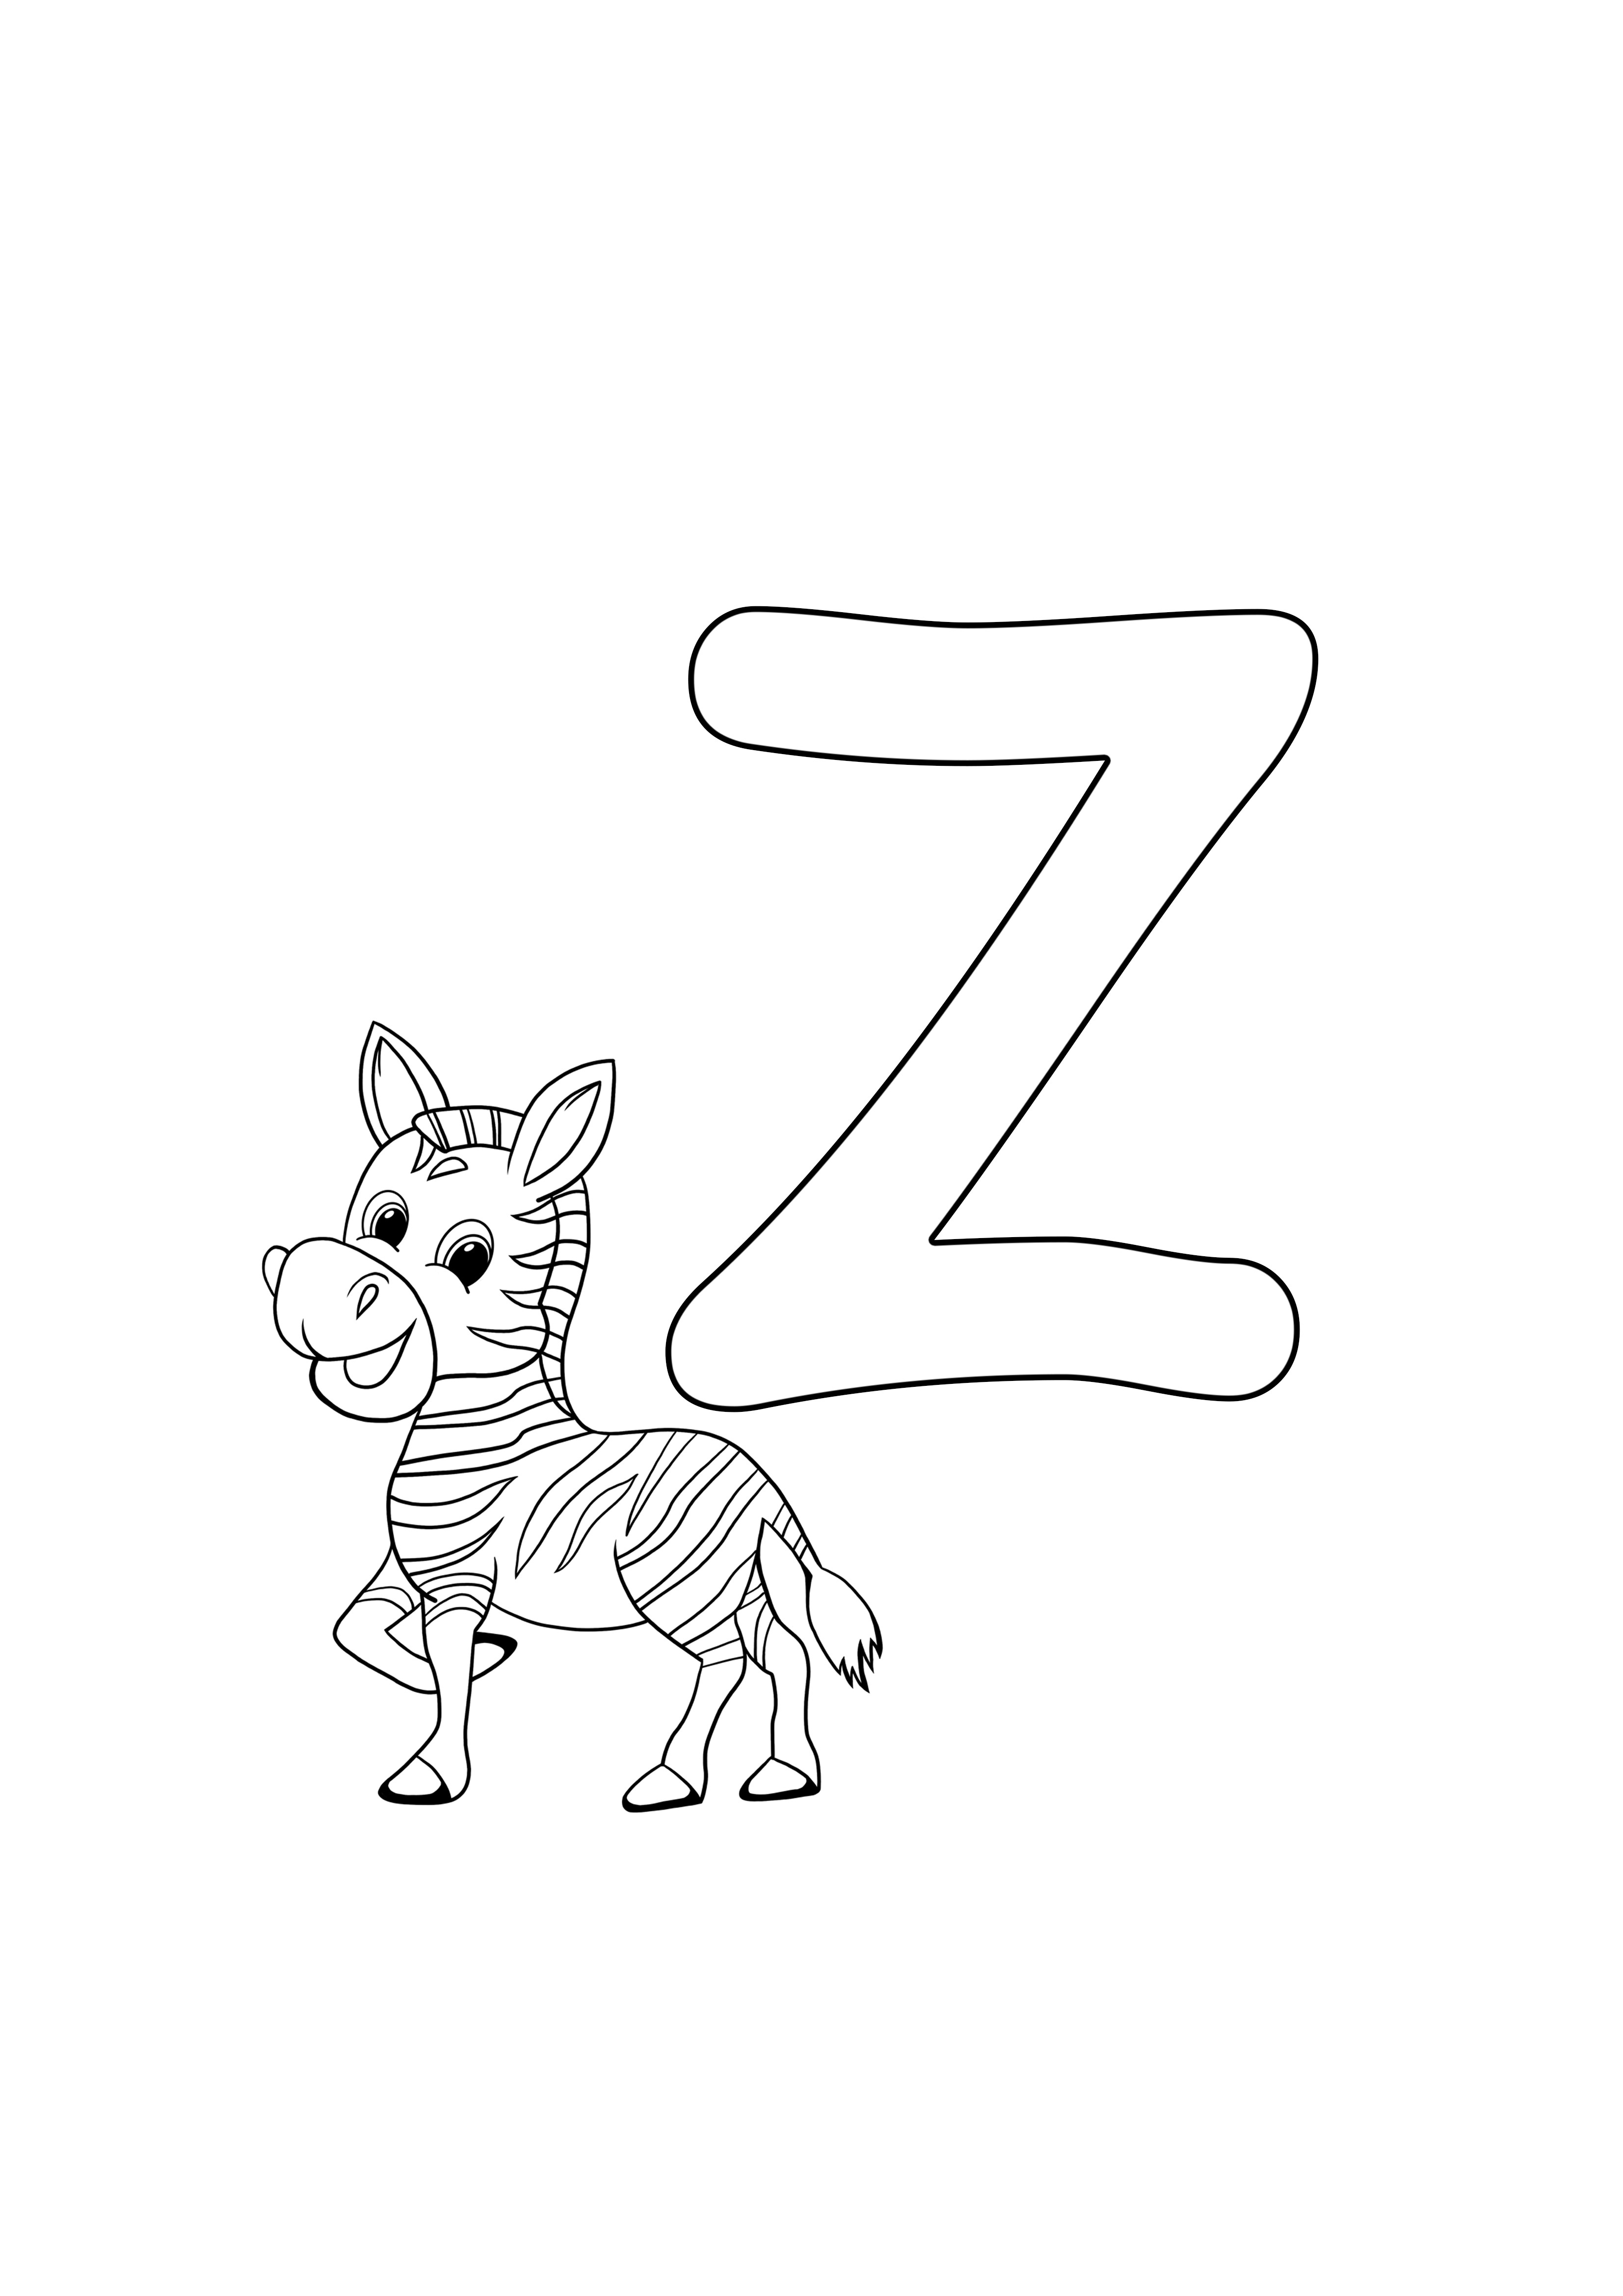 z, zebra için ücretsizdir, yazdırmak için ücretsiz, sayfa boyamak ücretsizdir